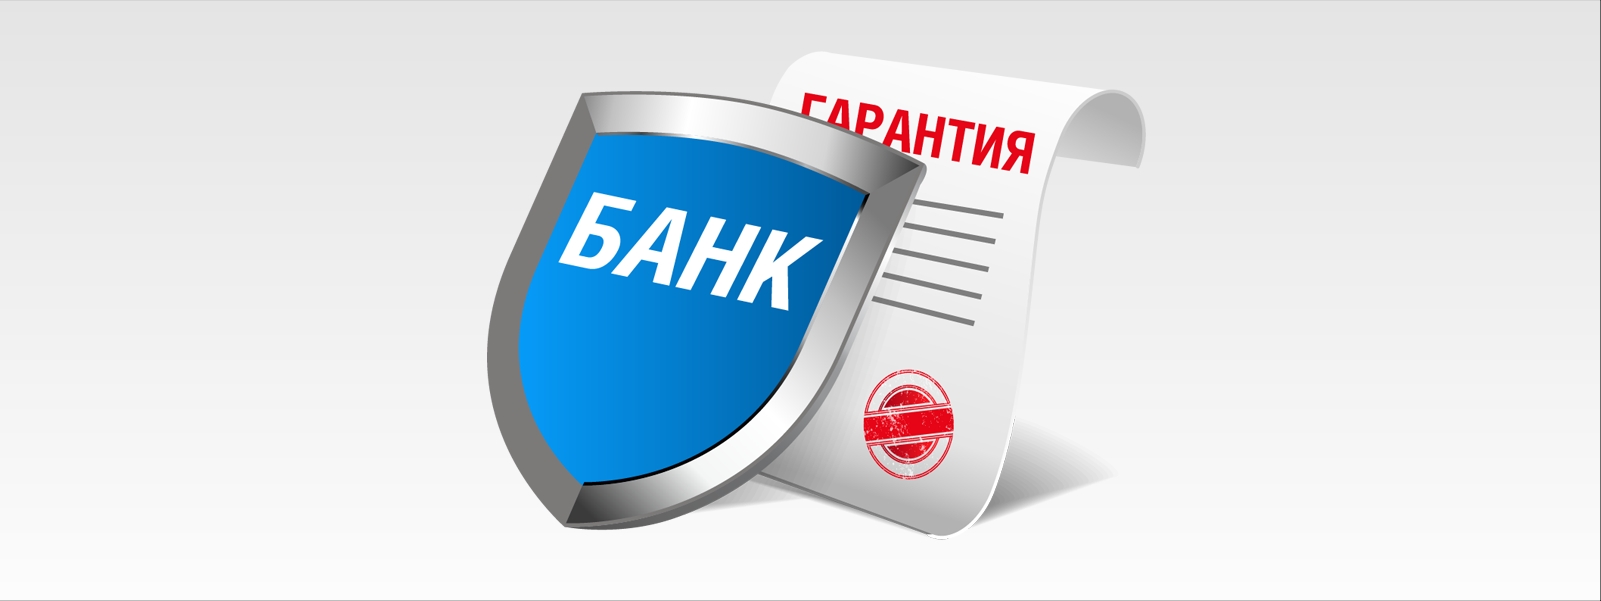 Минфин РФ направил на согласование законопроект об унификации требований к банковским гарантиям для МСП при закупках госкомпаний